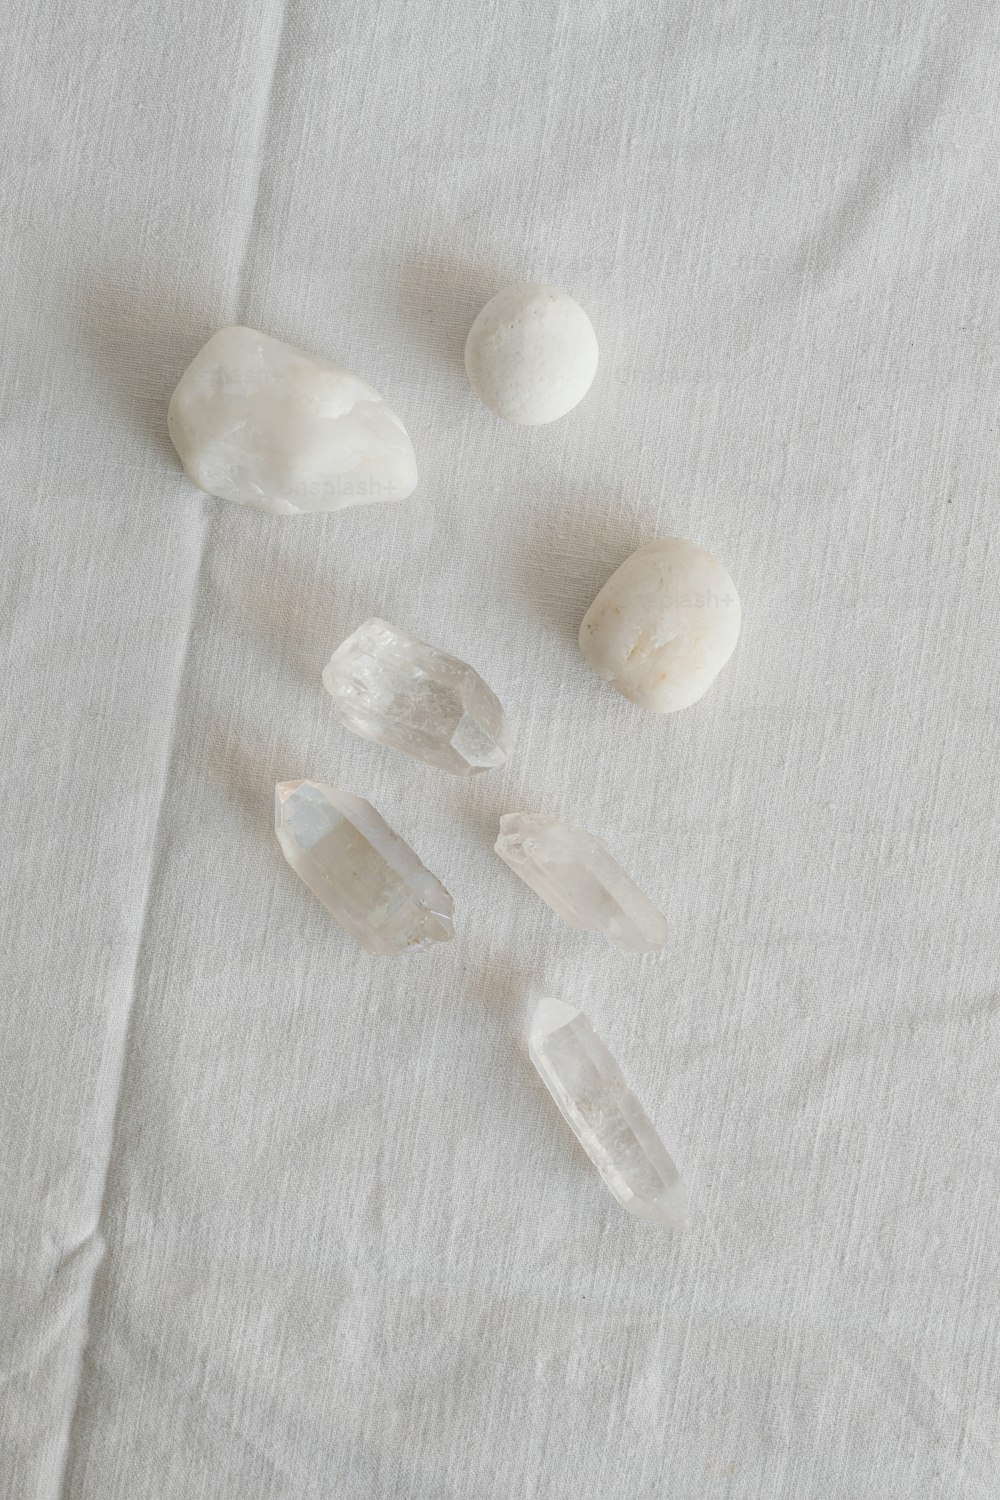 un groupe de rochers assis sur un tissu blanc